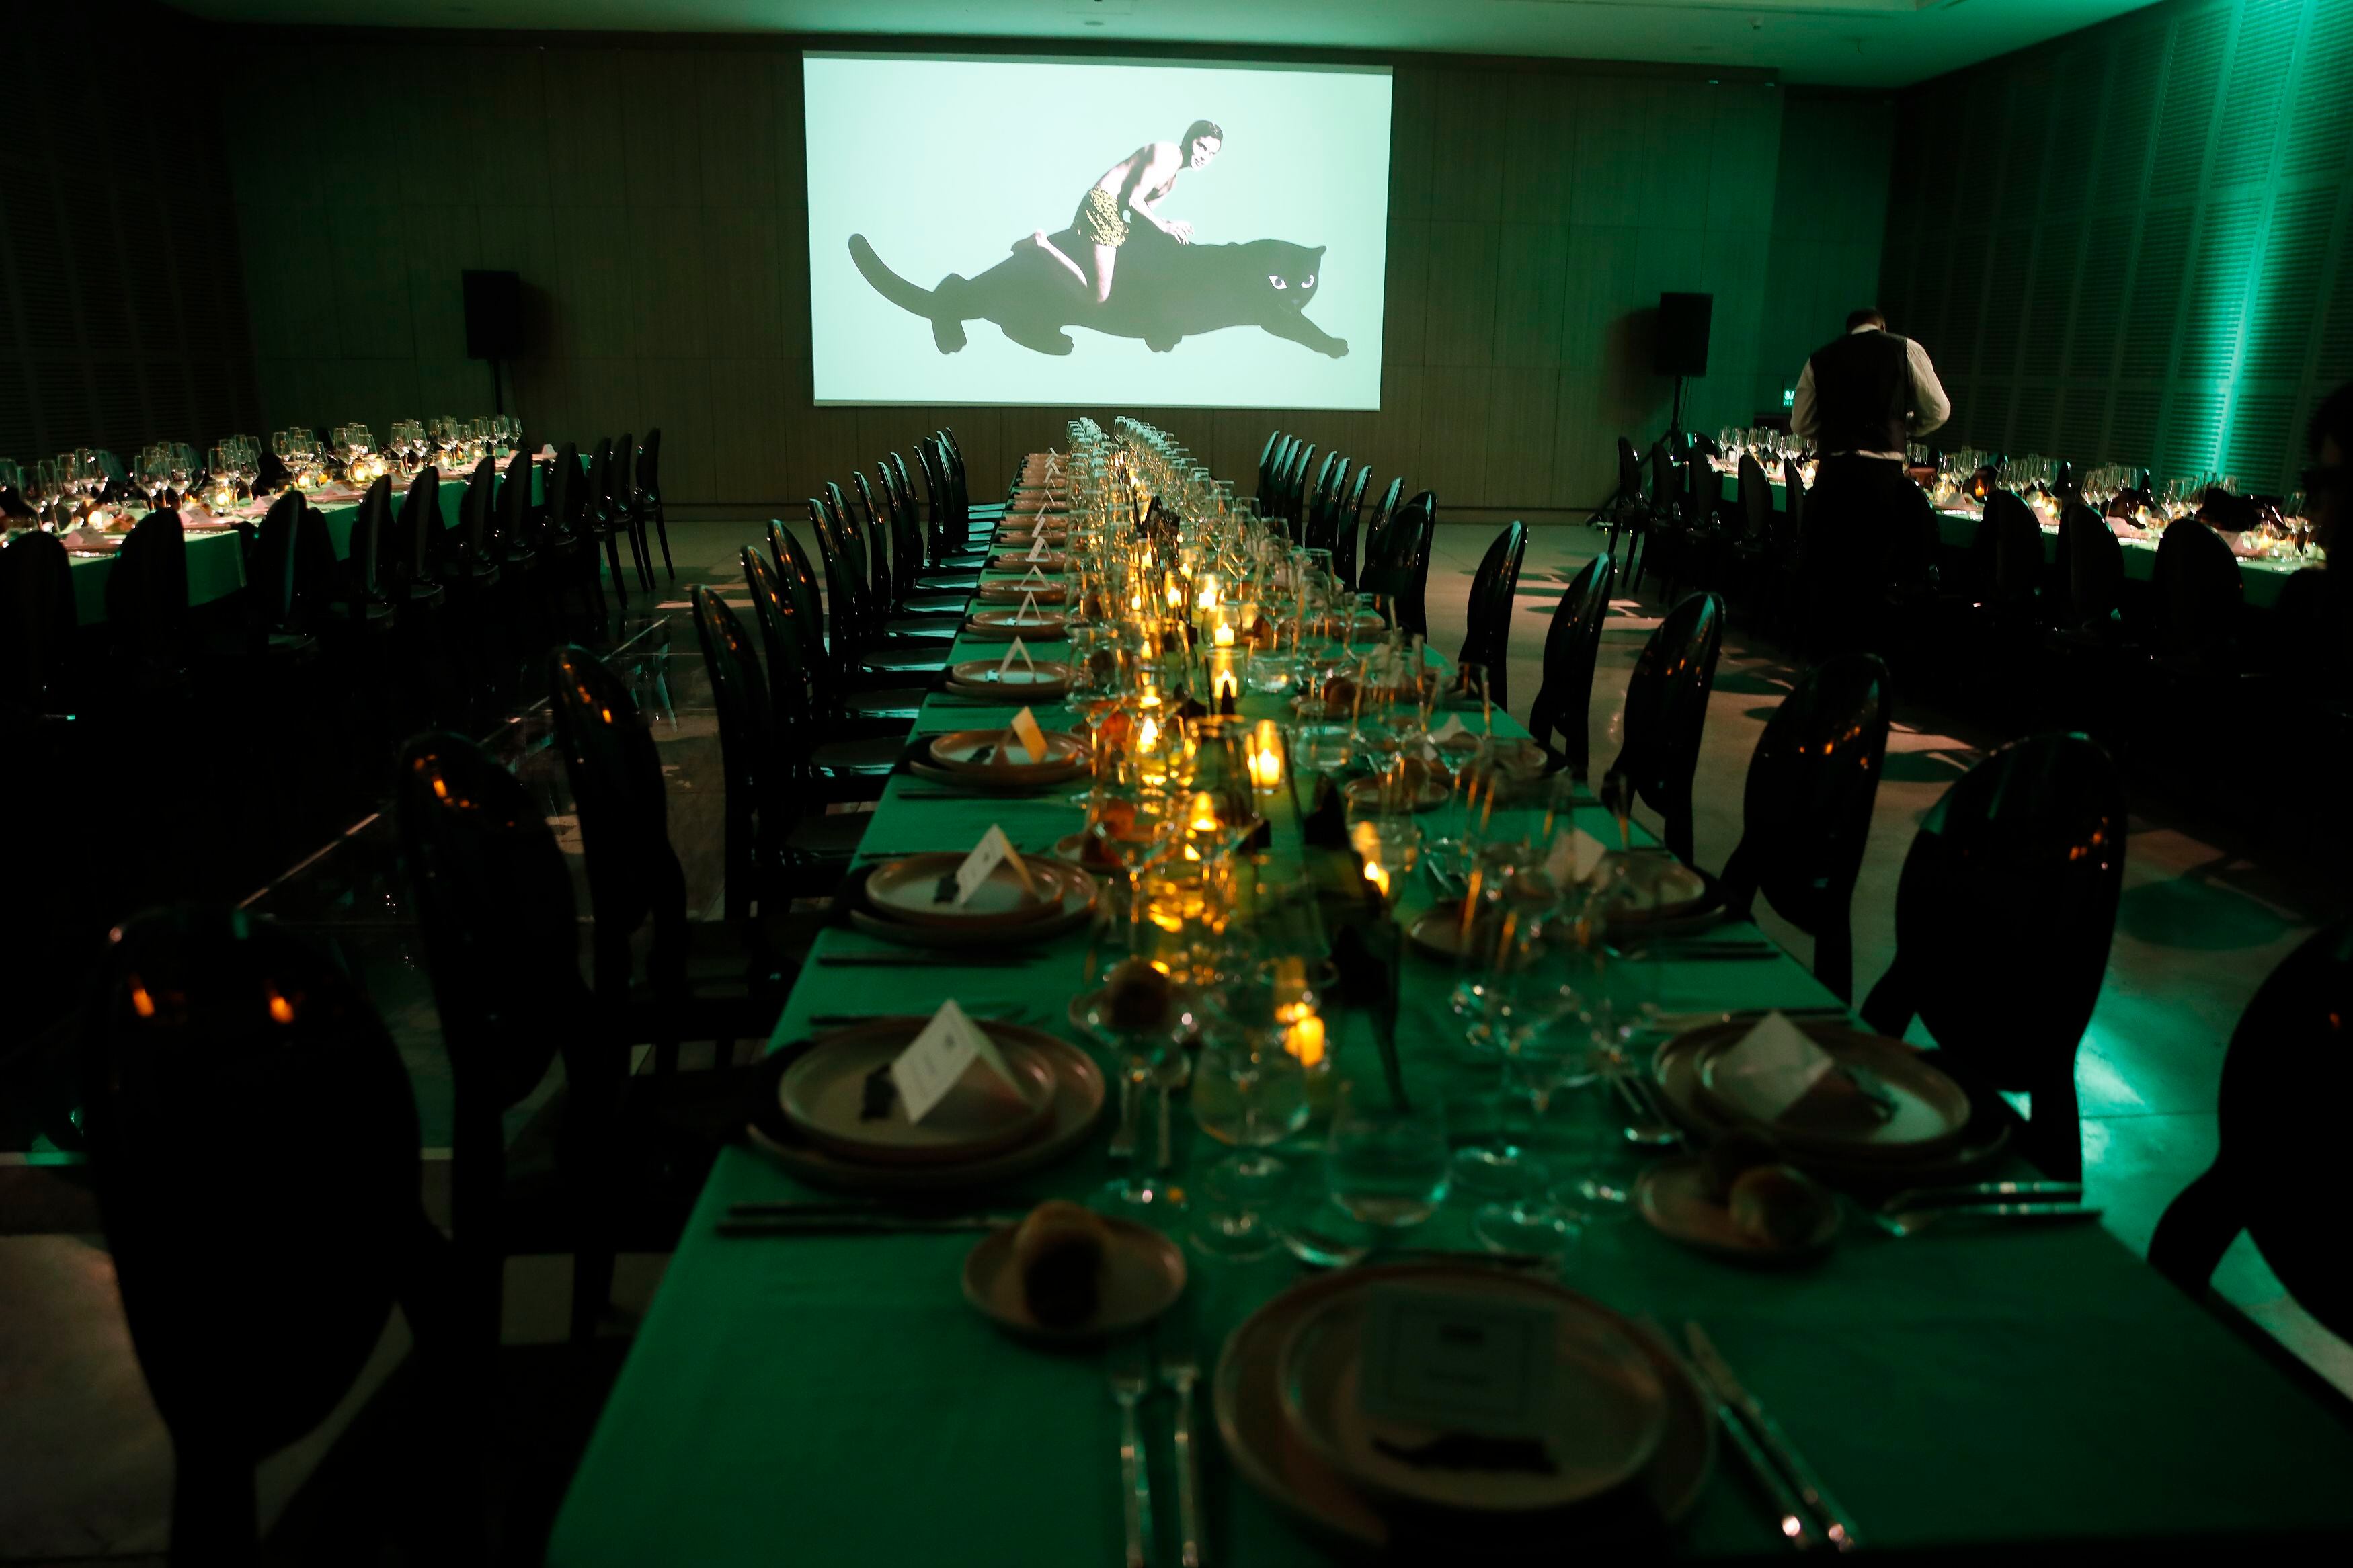 La noche homenaje incluyó cena y un baile posterior. Las directora del Museo Moderno y de la AAM destacaron el trabajo del artista. Por cada vez que se mencionó el nombre de Edgardo Giménez, sonó un rugido de pantera en el salón.